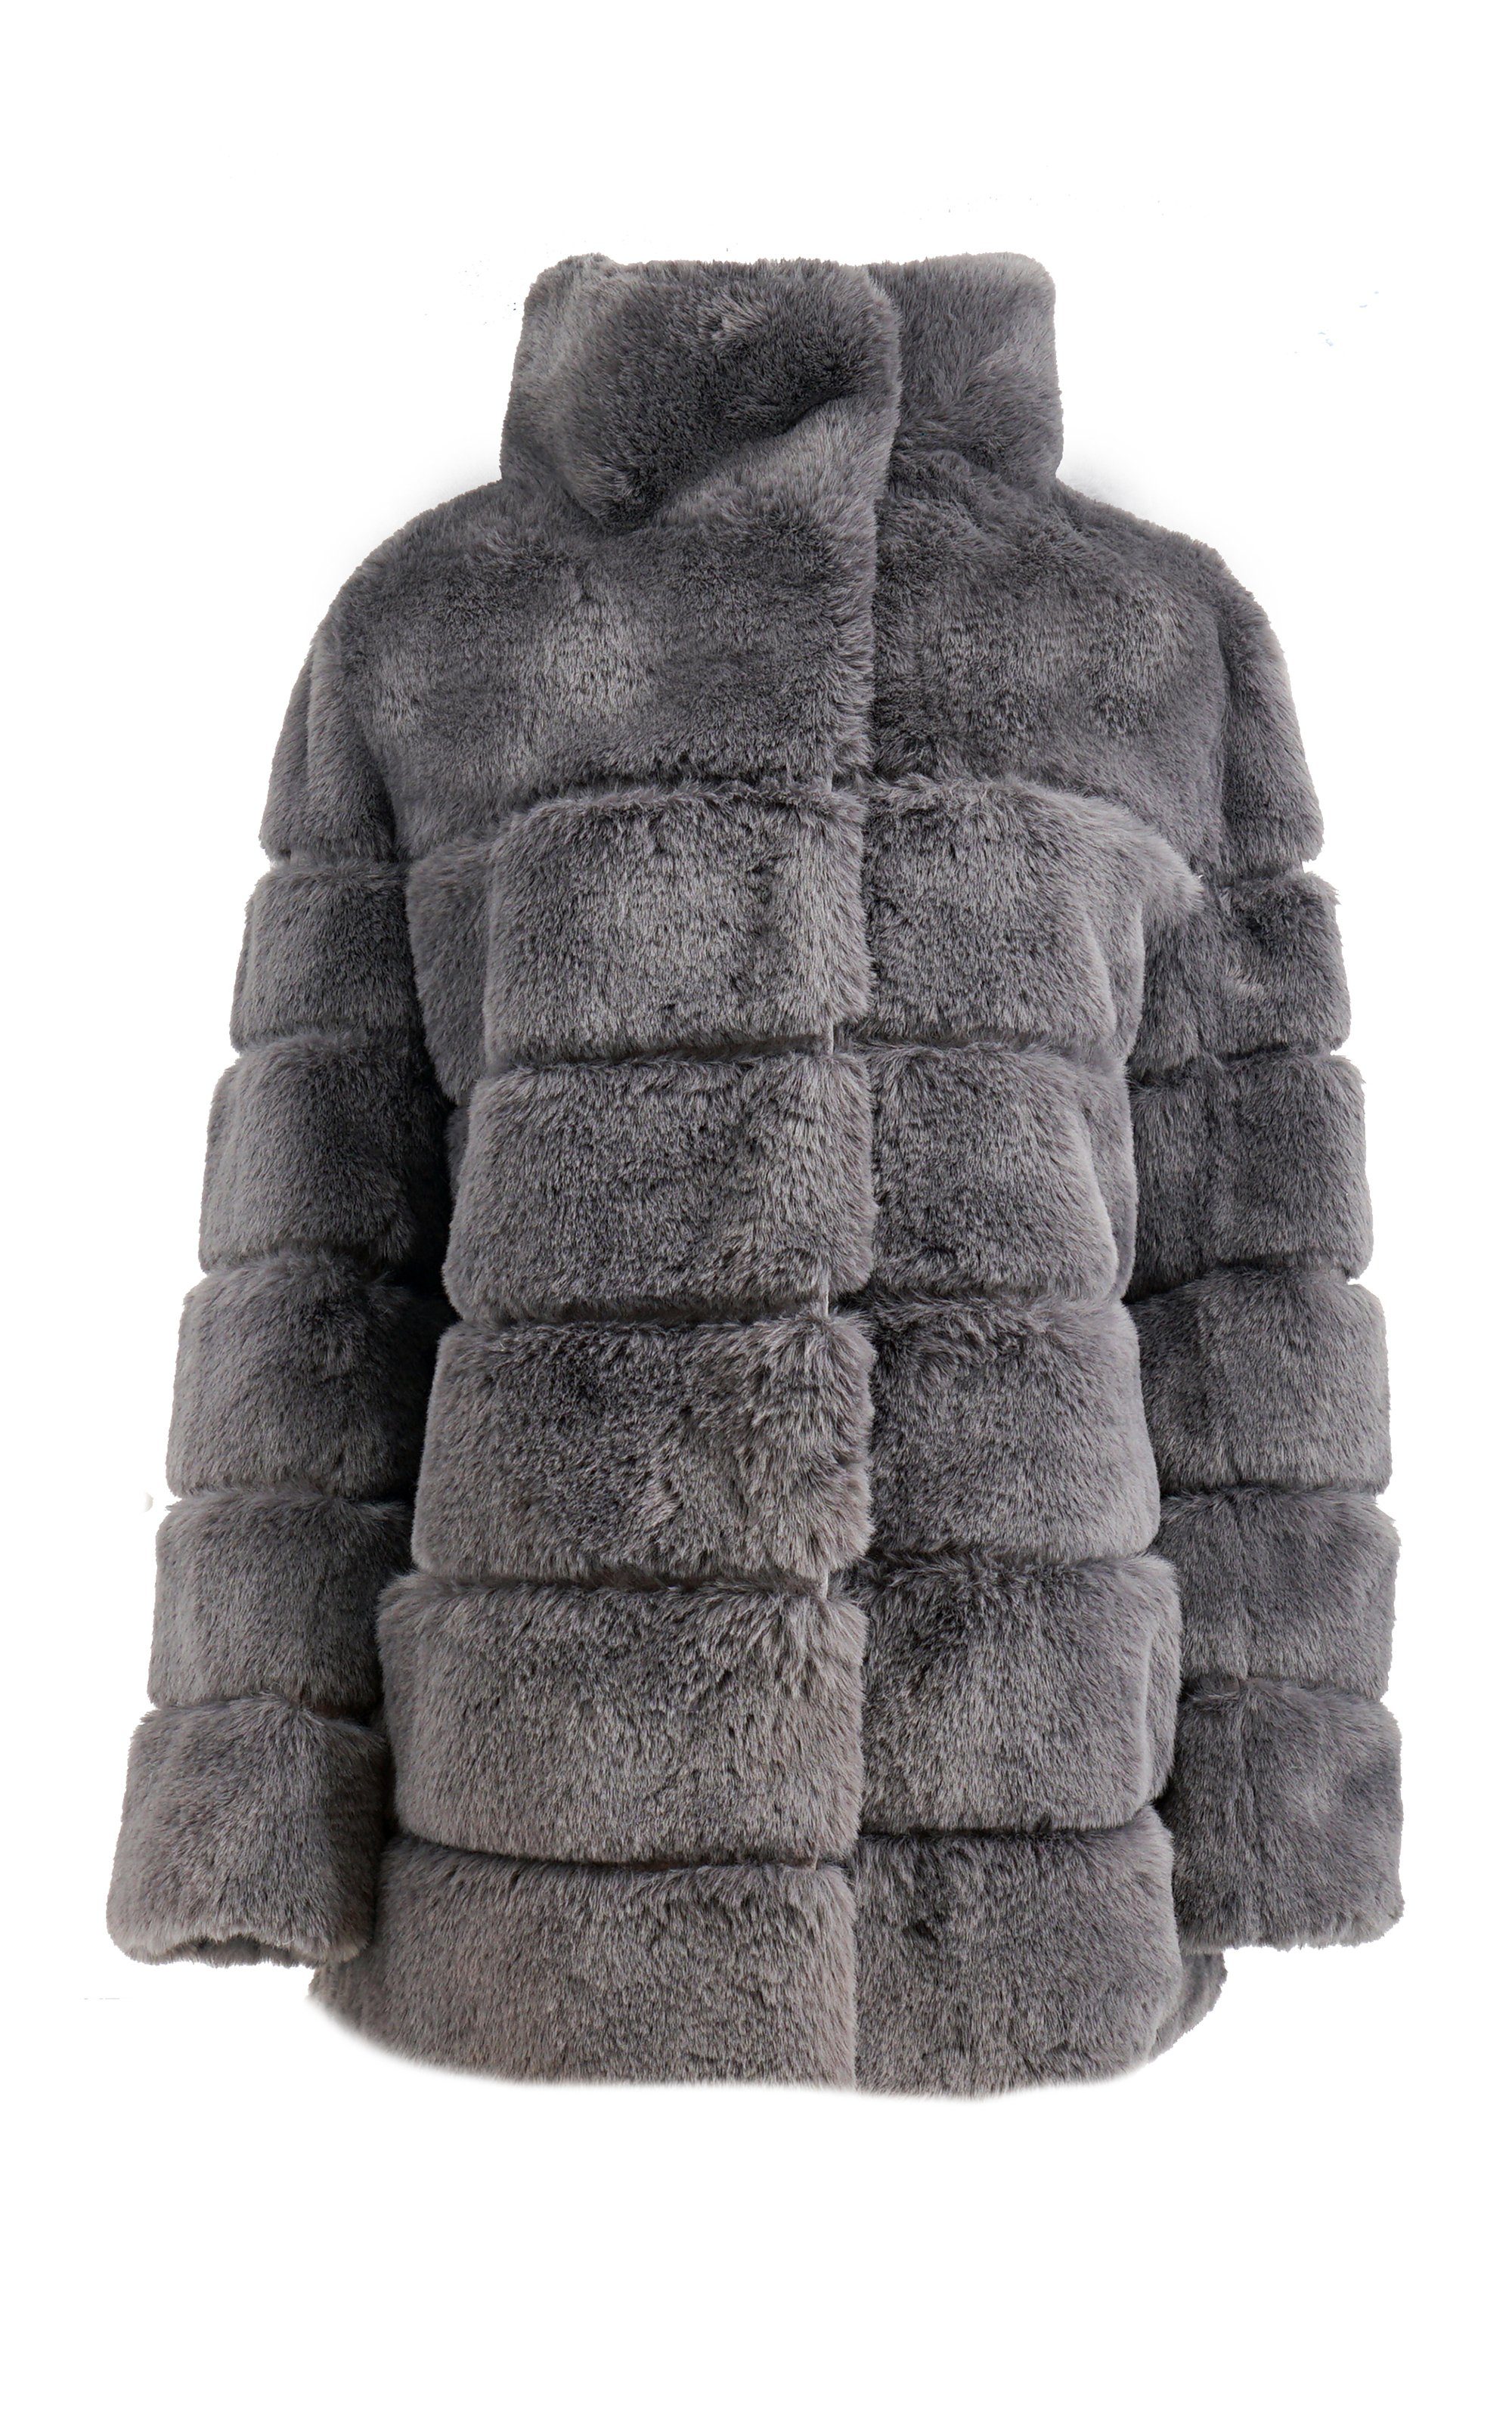 Antonio Cavosi Winterjacke hochwertige Web-Pelz Jacke mit Umlegekragen in großer Größe erhältlich | Jacken